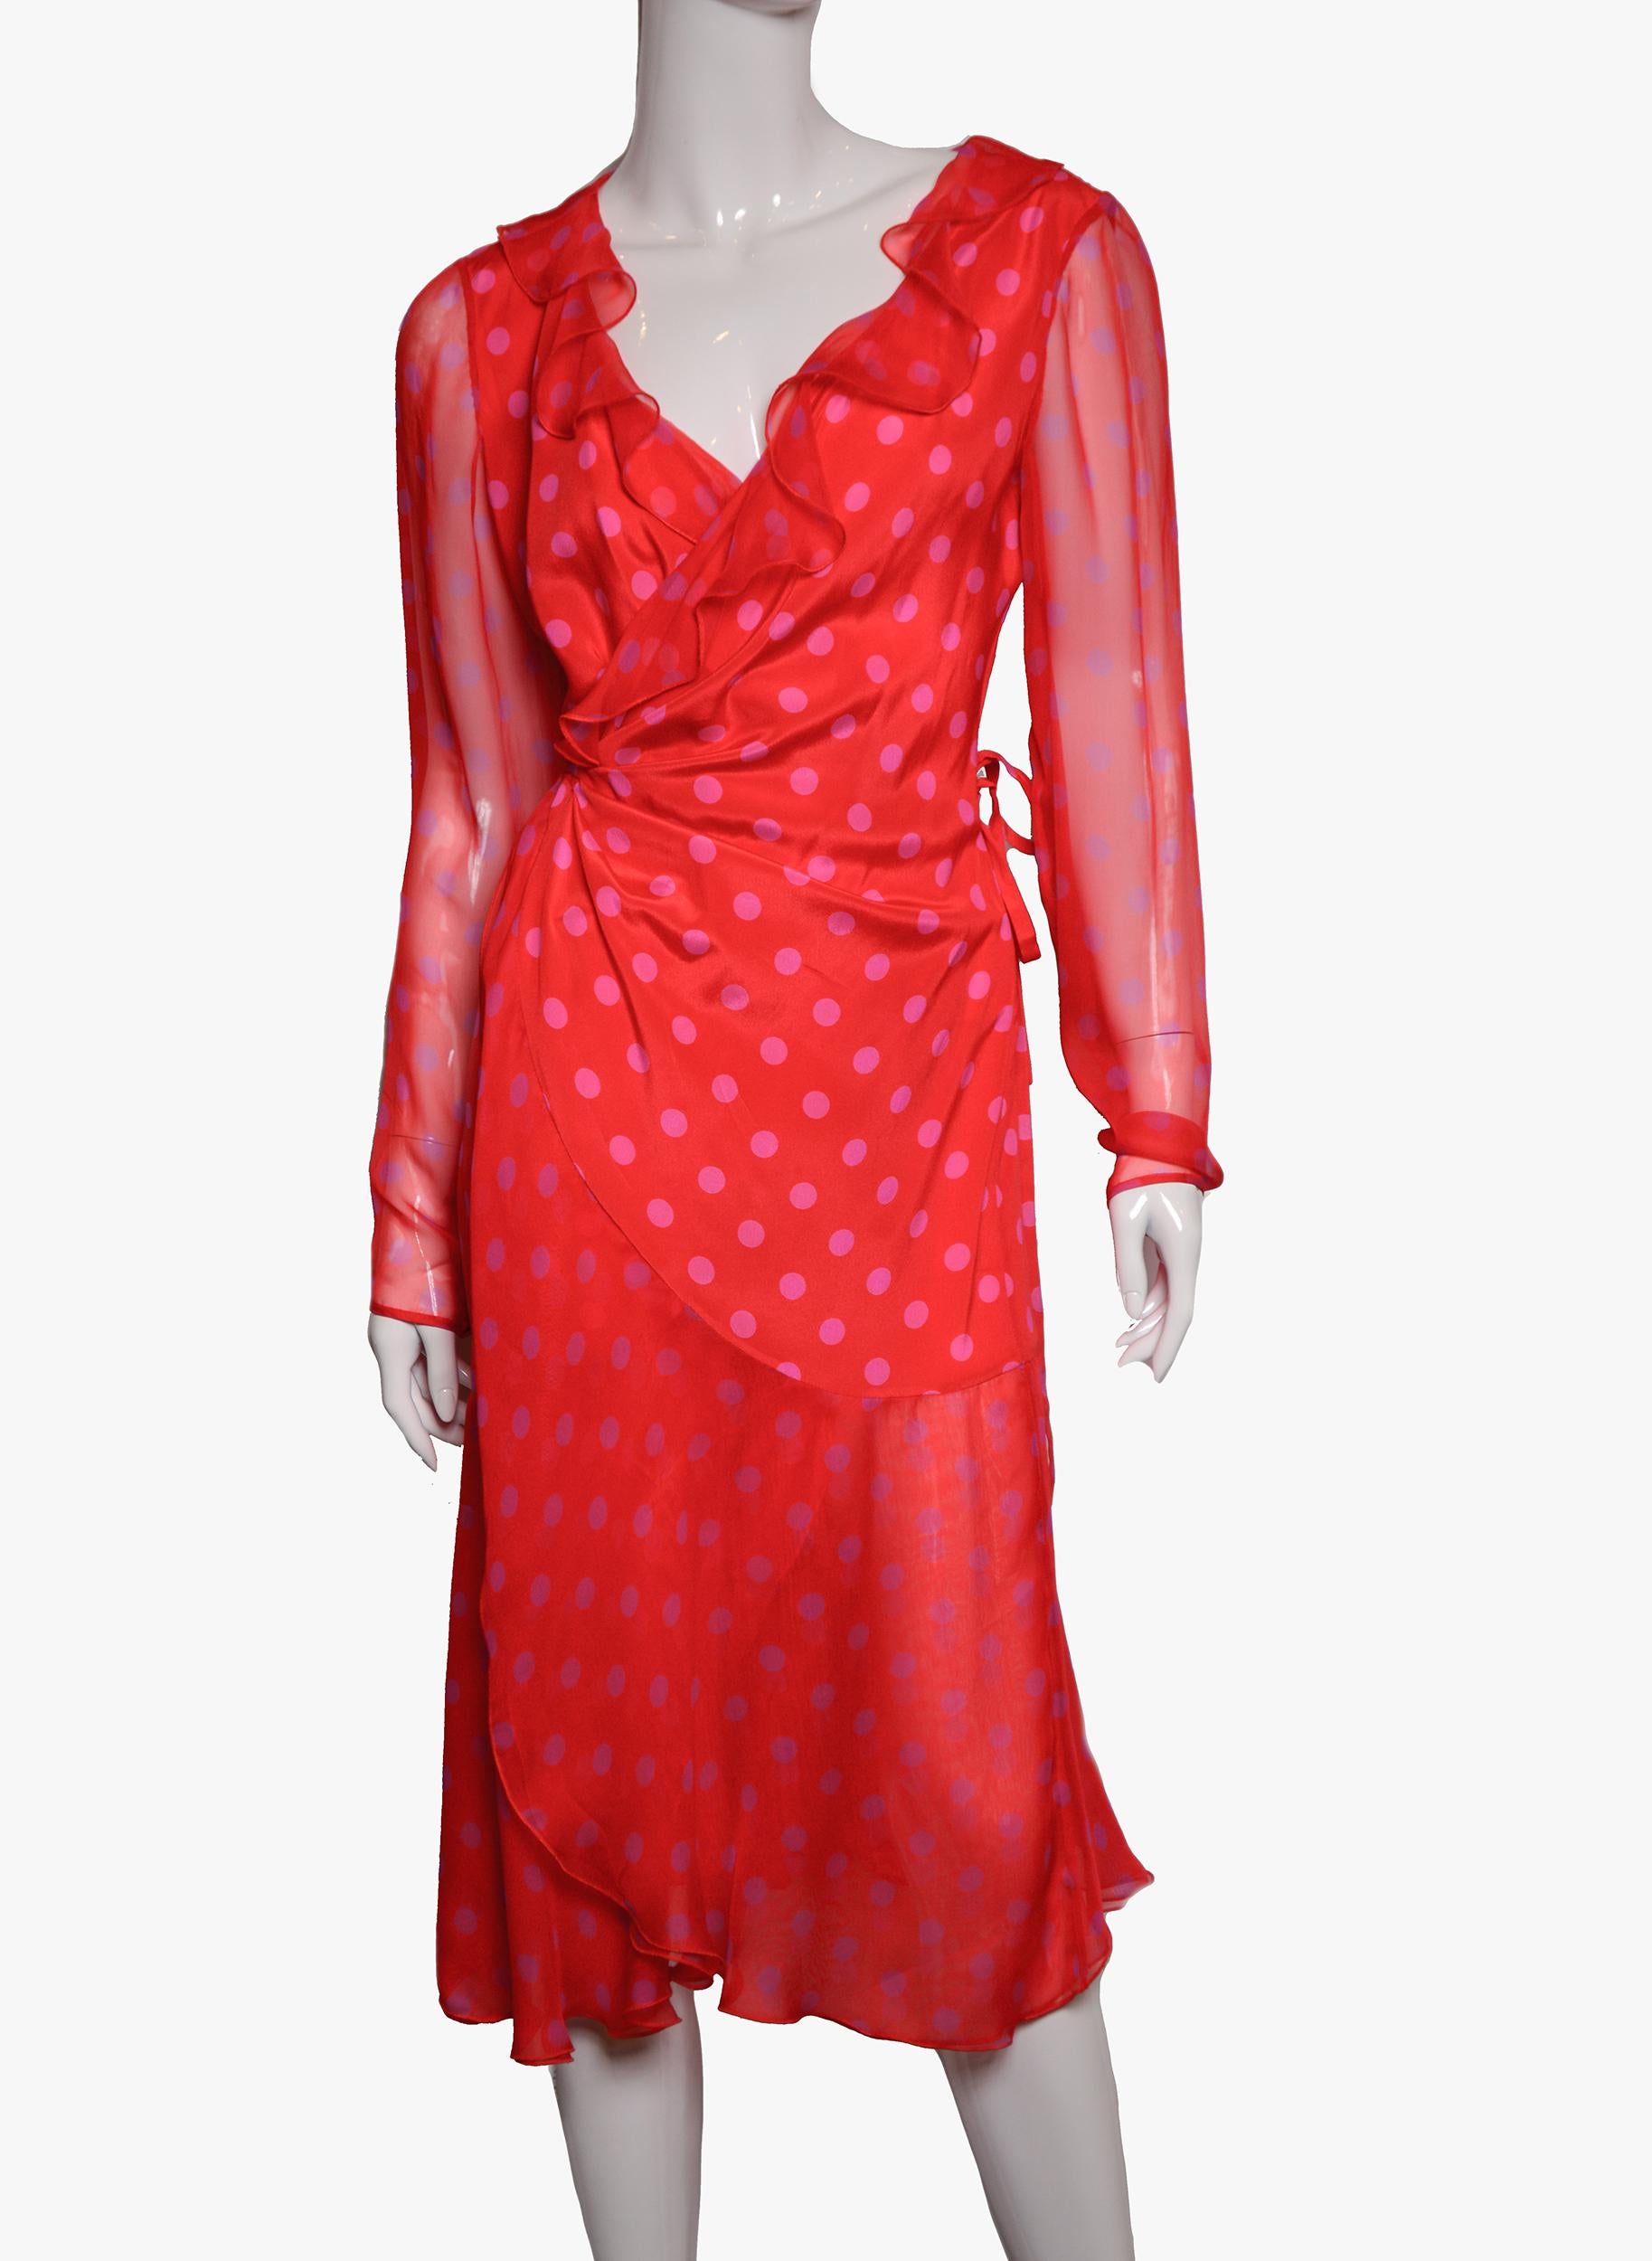 Vintage Emanuel Ungaro Kleid aus leichter, fließender Seide.
Wird mit einer Schlaufe geschlossen.
Farbe - rot mit einem Karotten-Ton.
Zusammensetzung: 100% Seide
Größe: S/36
Abmessungen:
Ärmellänge: 62 cm / 24